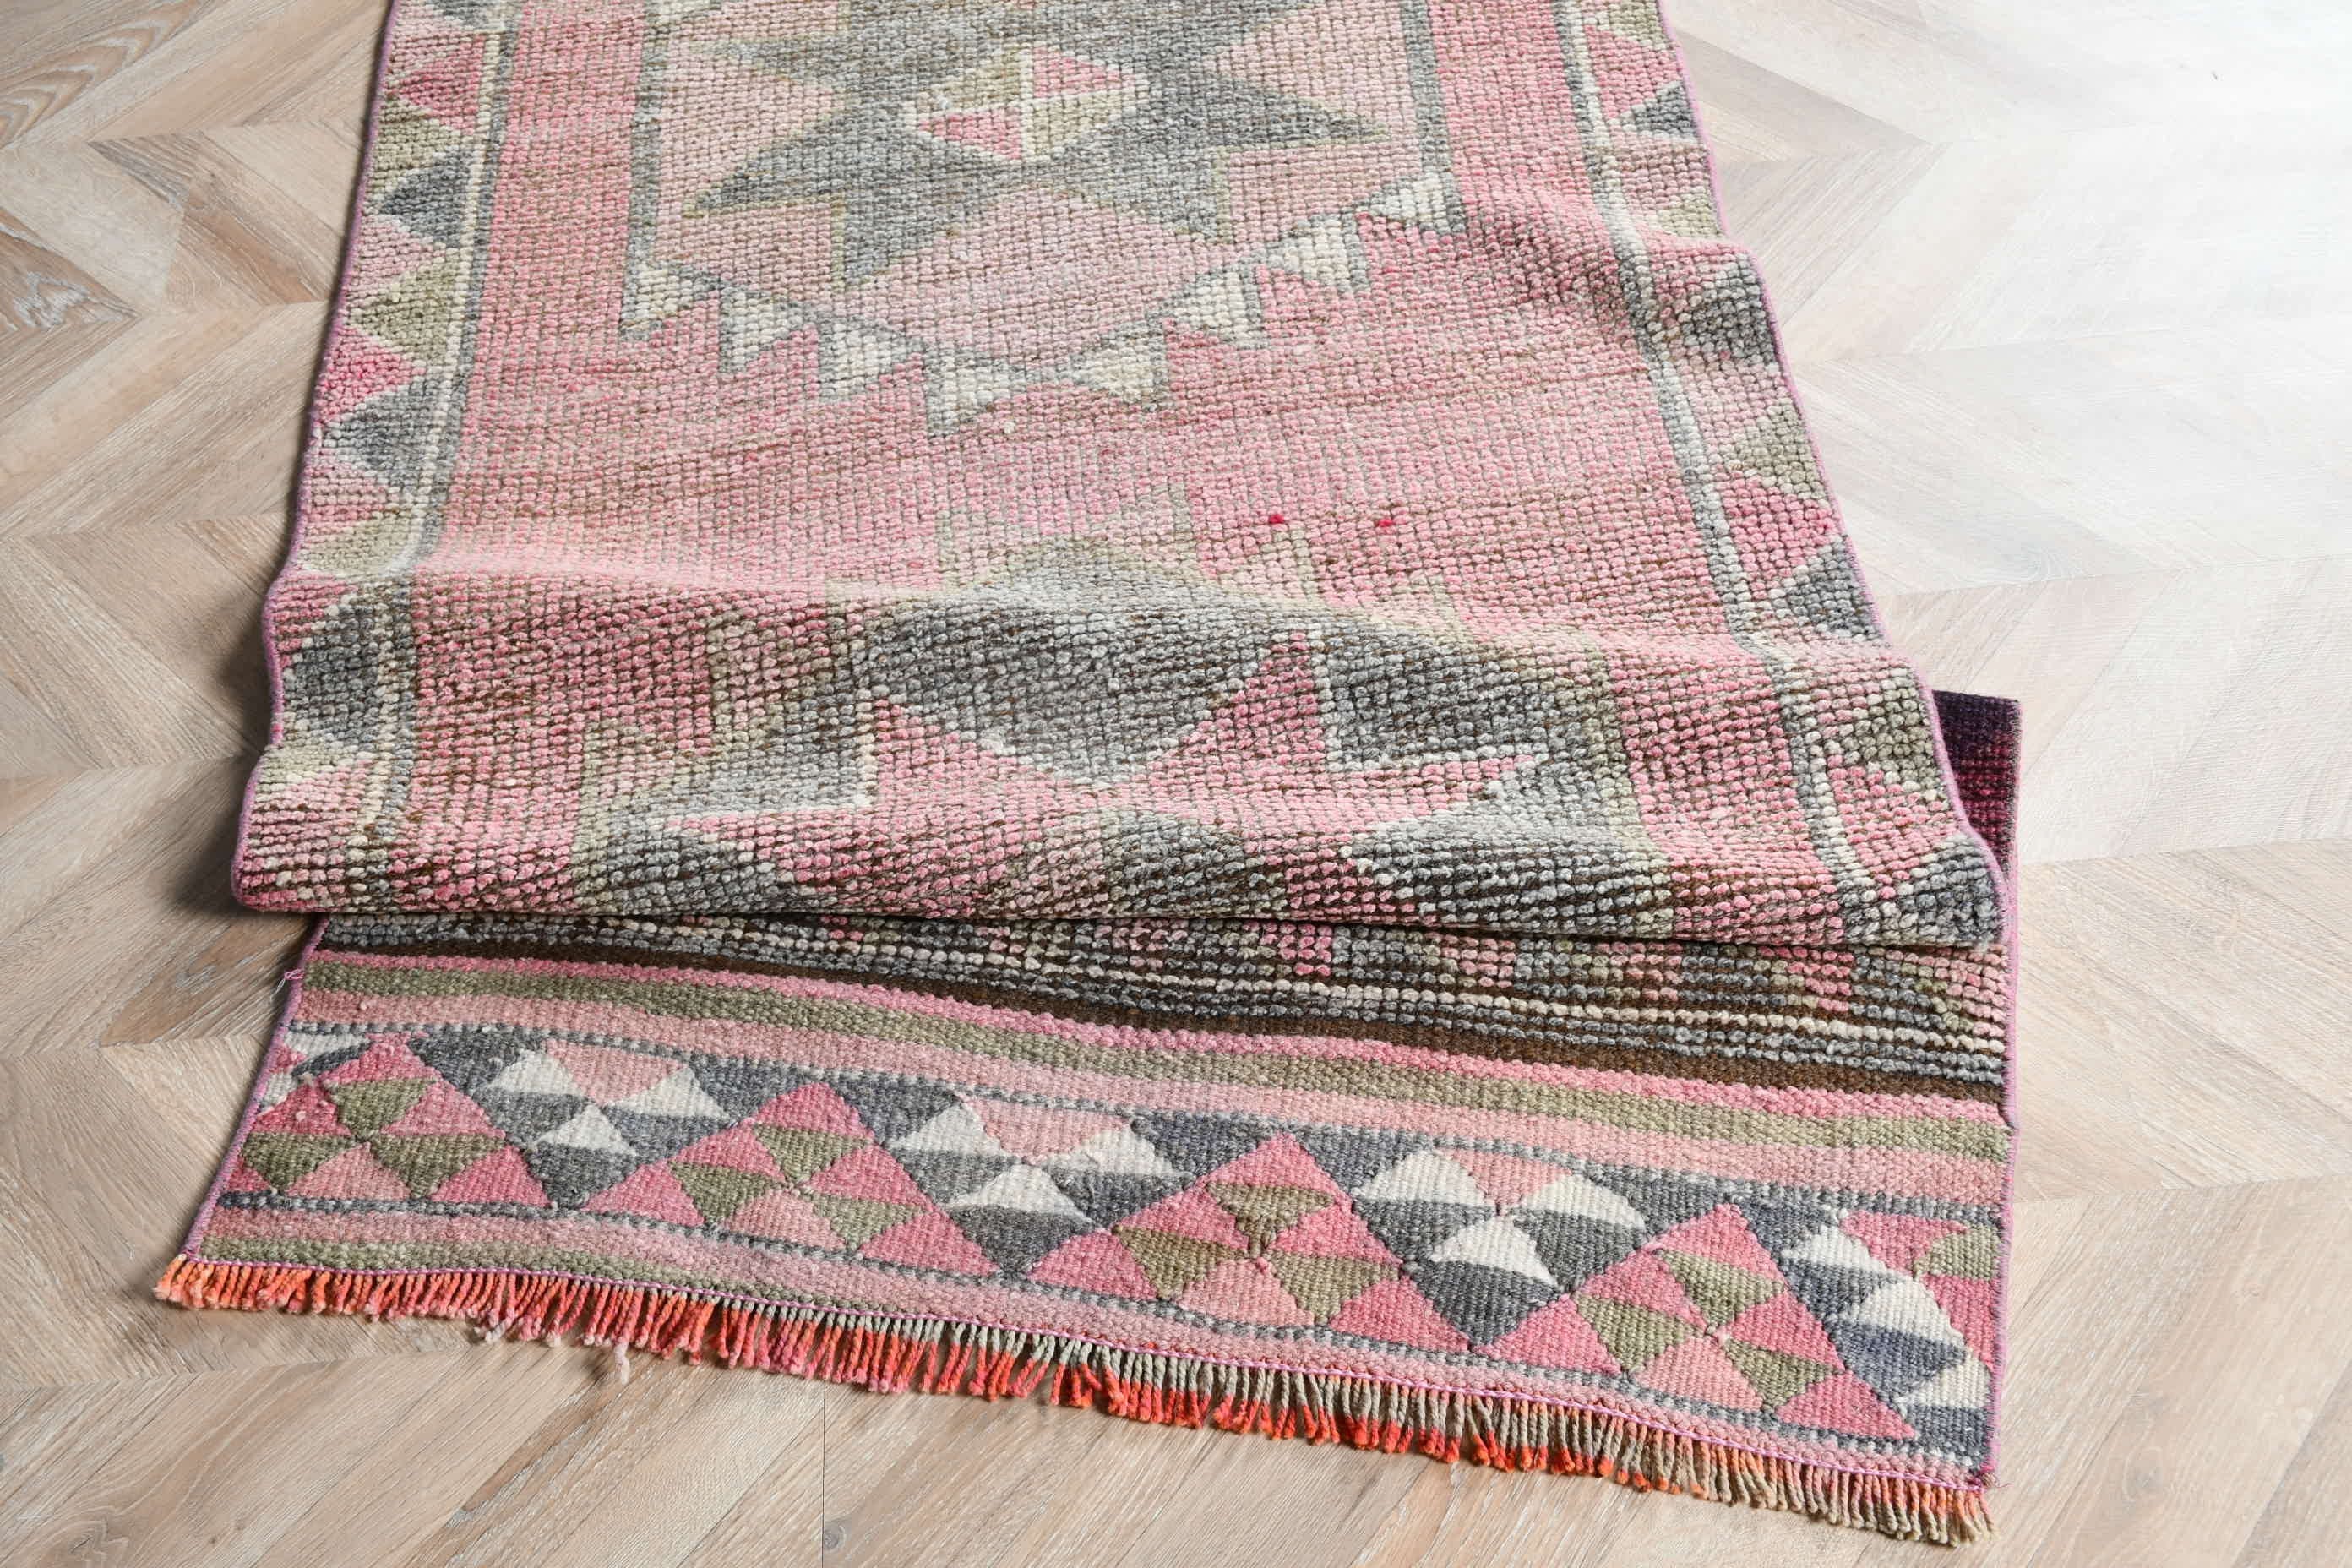 Pink Oriental Rug, Hallway Rugs, Wool Rug, Turkish Rug, Rugs for Kitchen, 2.9x11.4 ft Runner Rug, Stair Rug, Home Decor Rug, Vintage Rugs